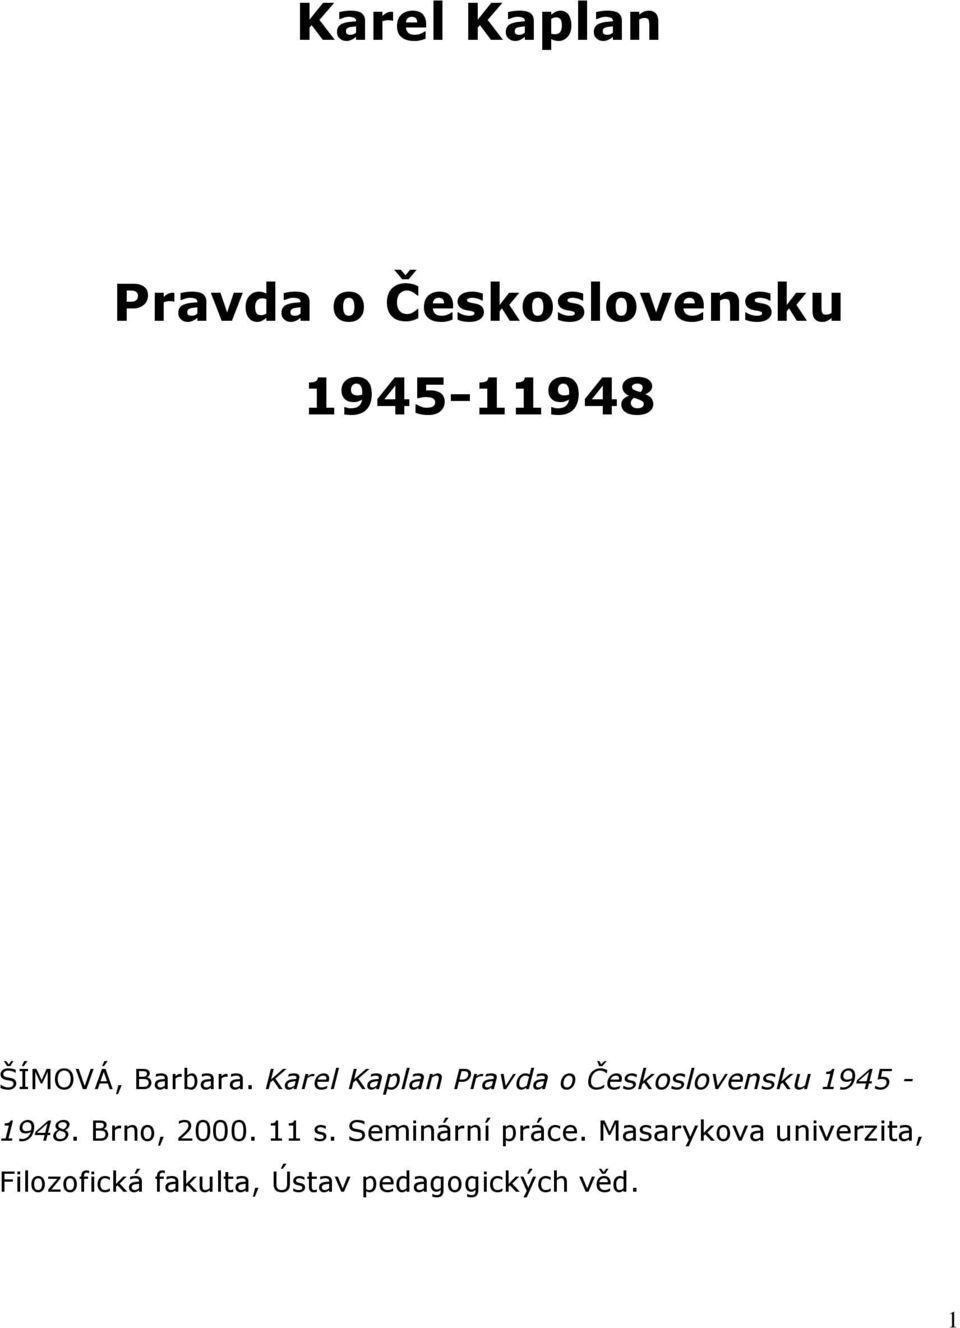 Karel Kaplan Pravda o Československu 1945-1948.